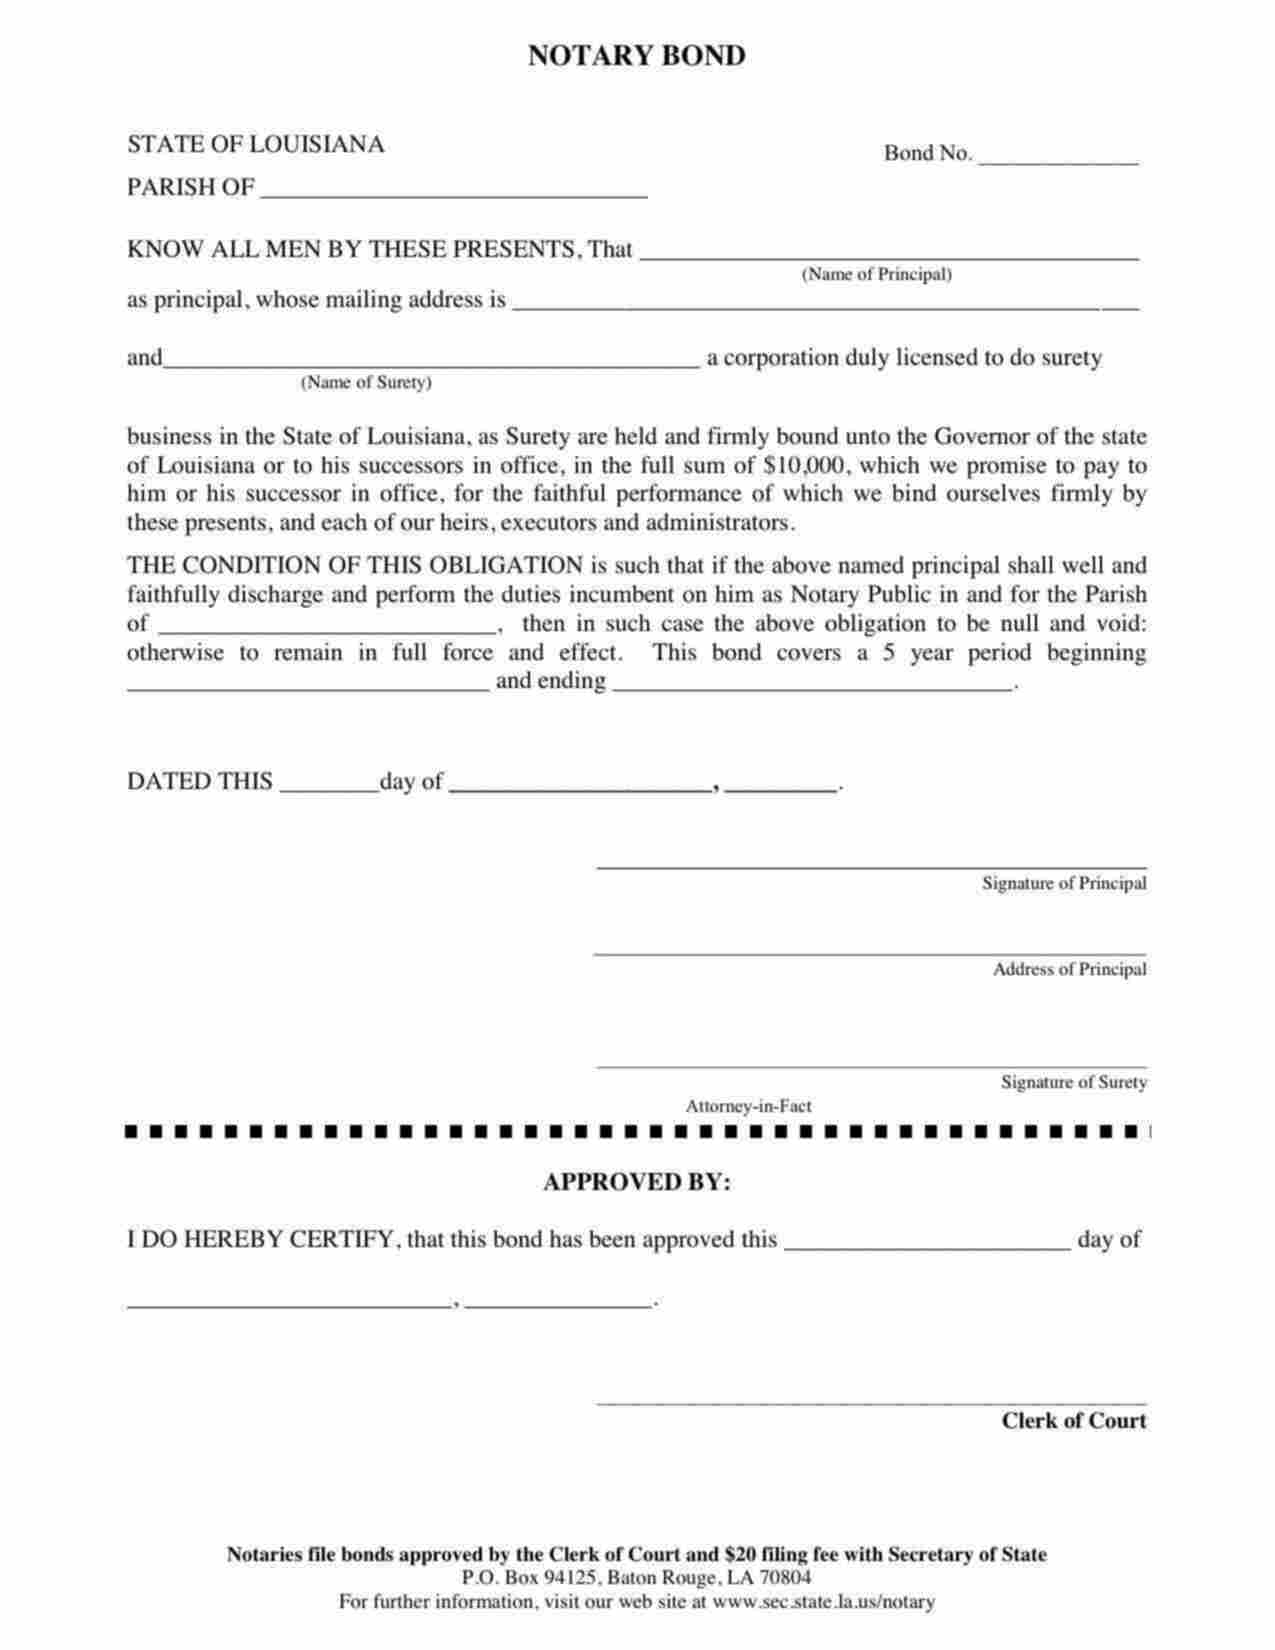 Louisiana Notary Public Bond Form